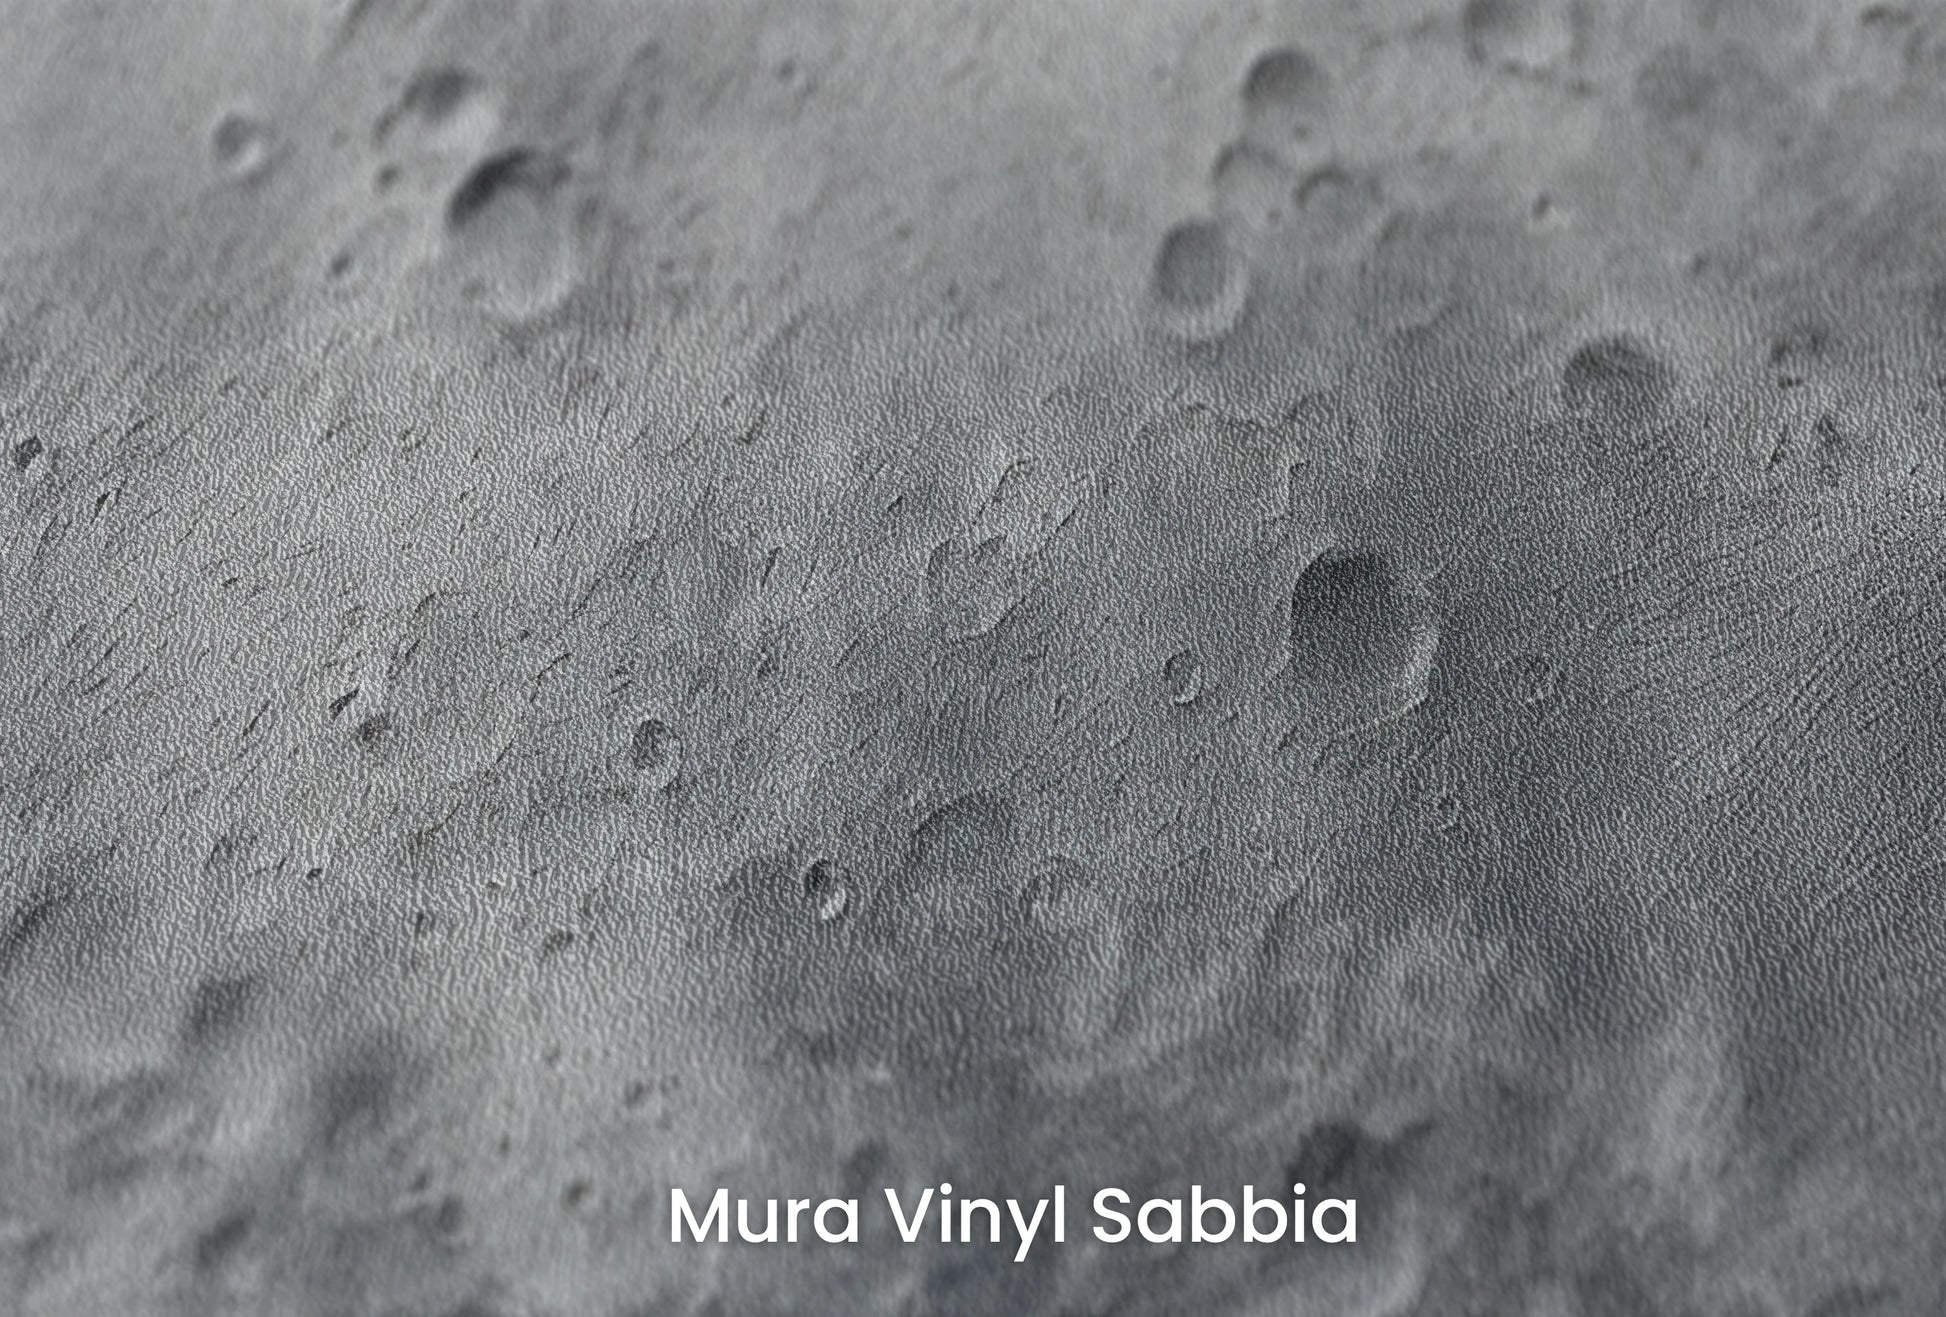 Zbliżenie na artystyczną fototapetę o nazwie Cosmic Blush na podłożu Mura Vinyl Sabbia struktura grubego ziarna piasku.